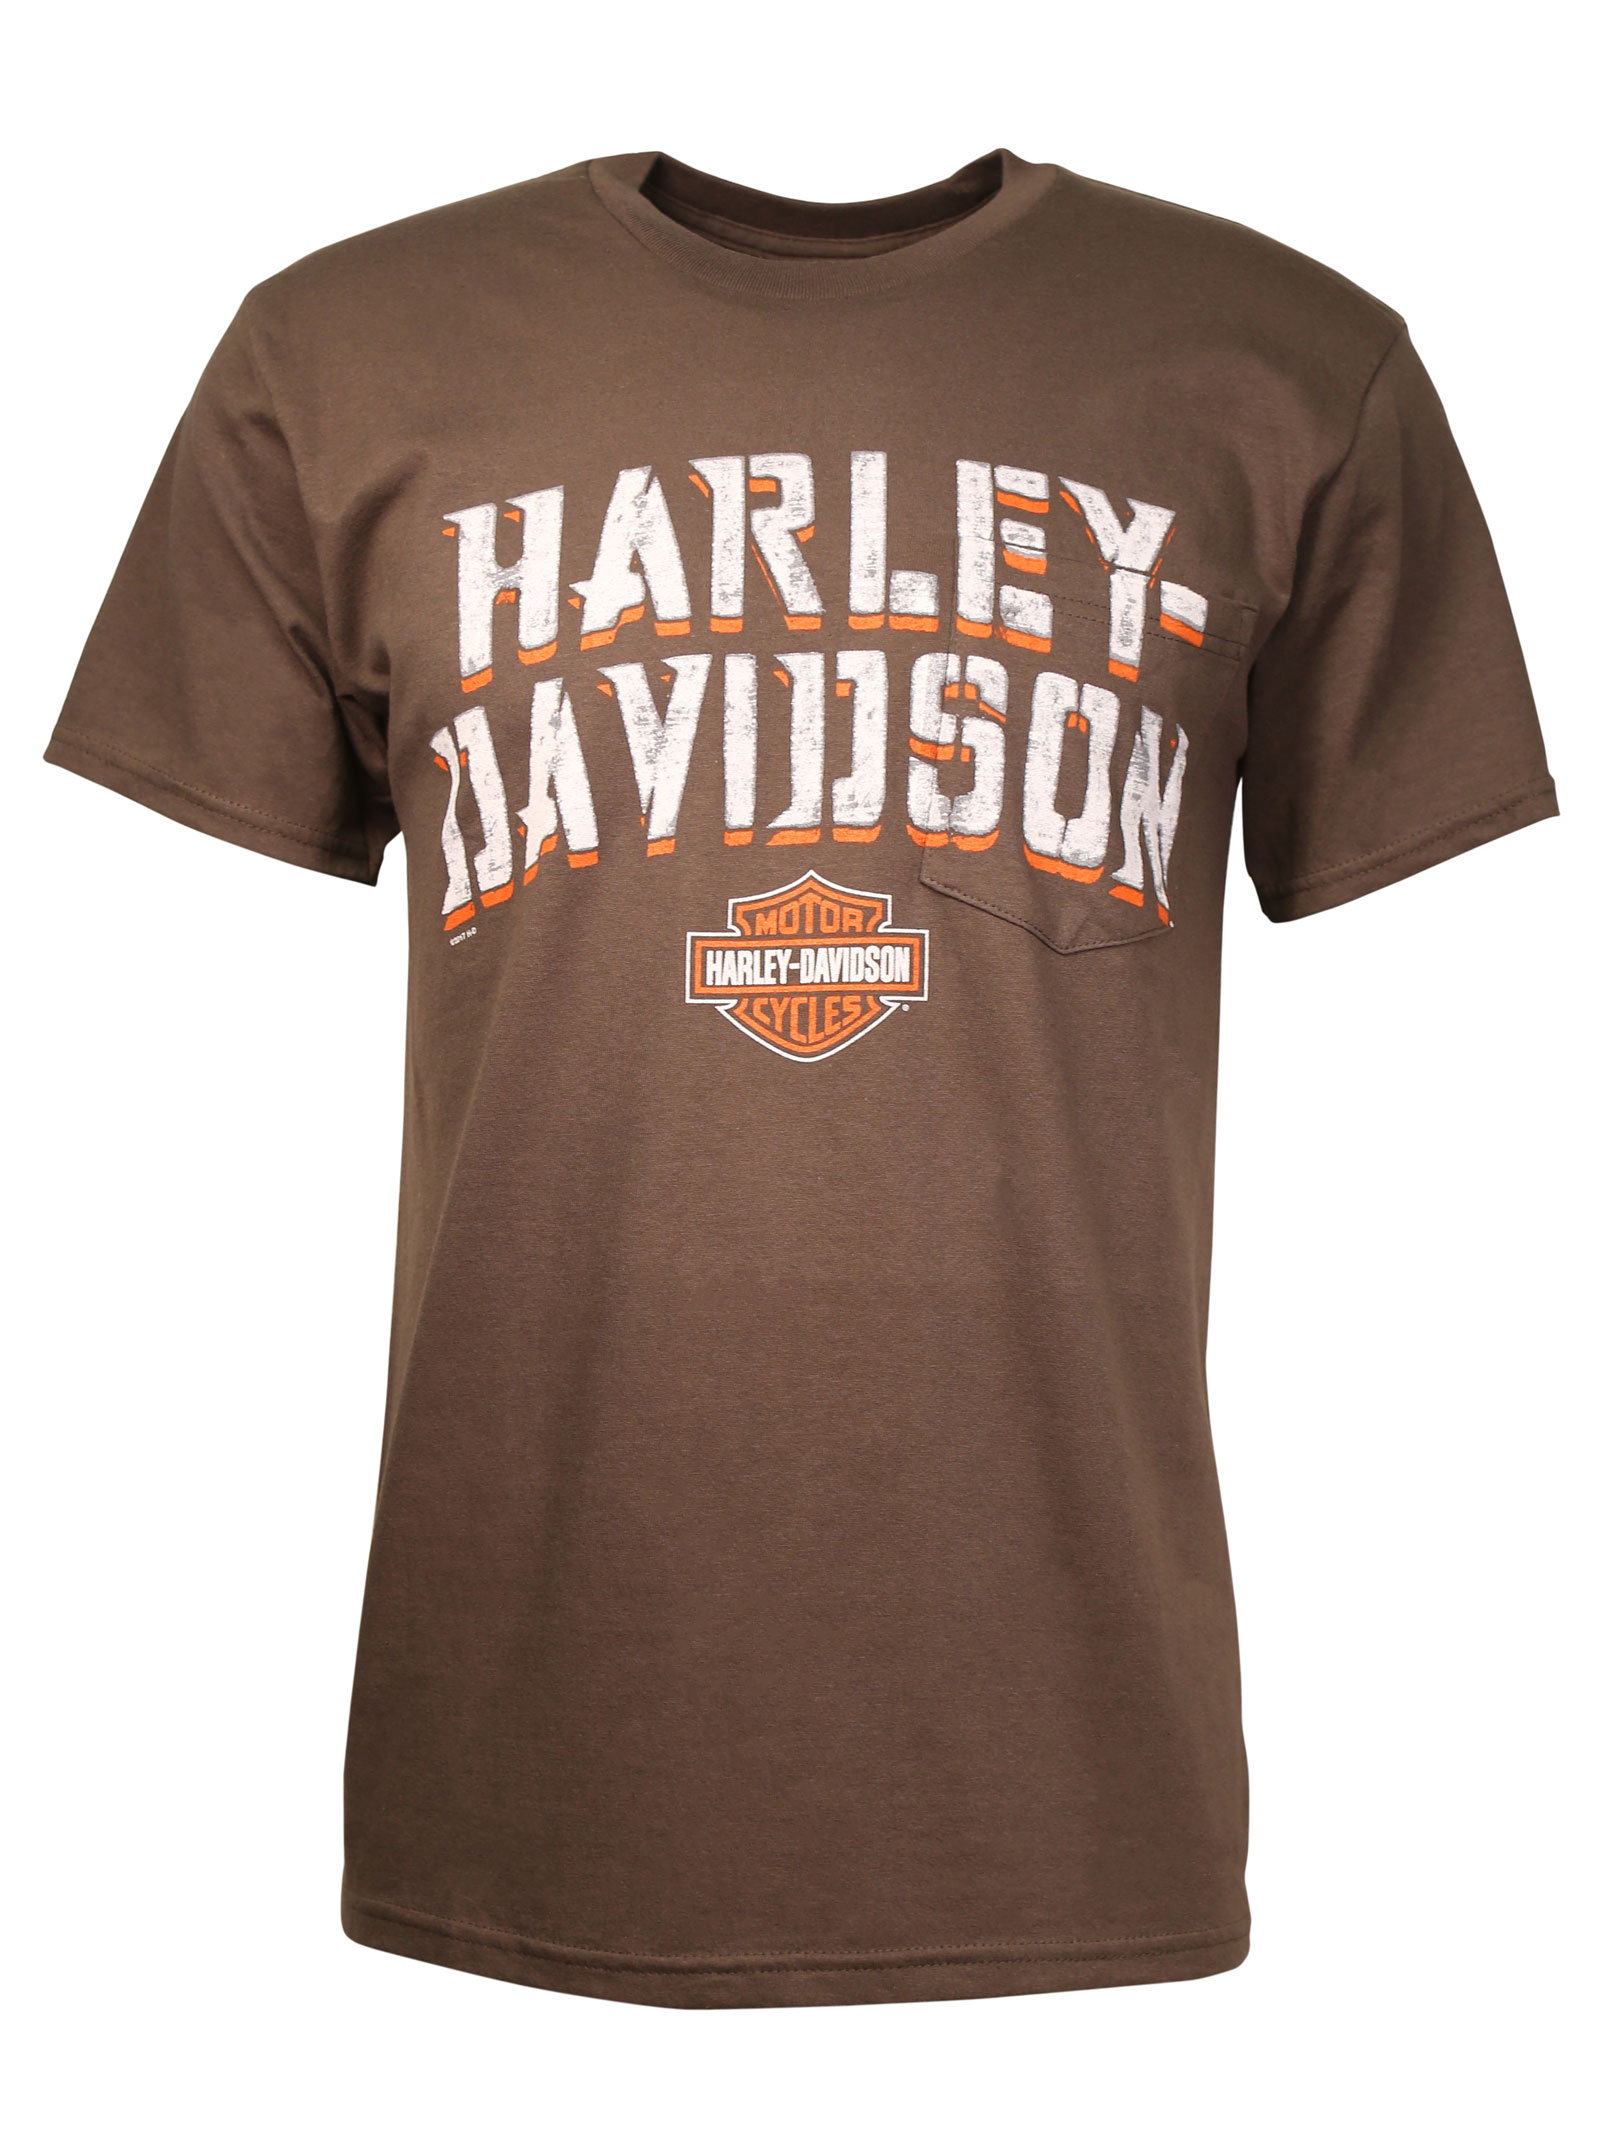 Harley Davidson T Shirt Harley Davidson T Shirt Size Xl Roxxbkk